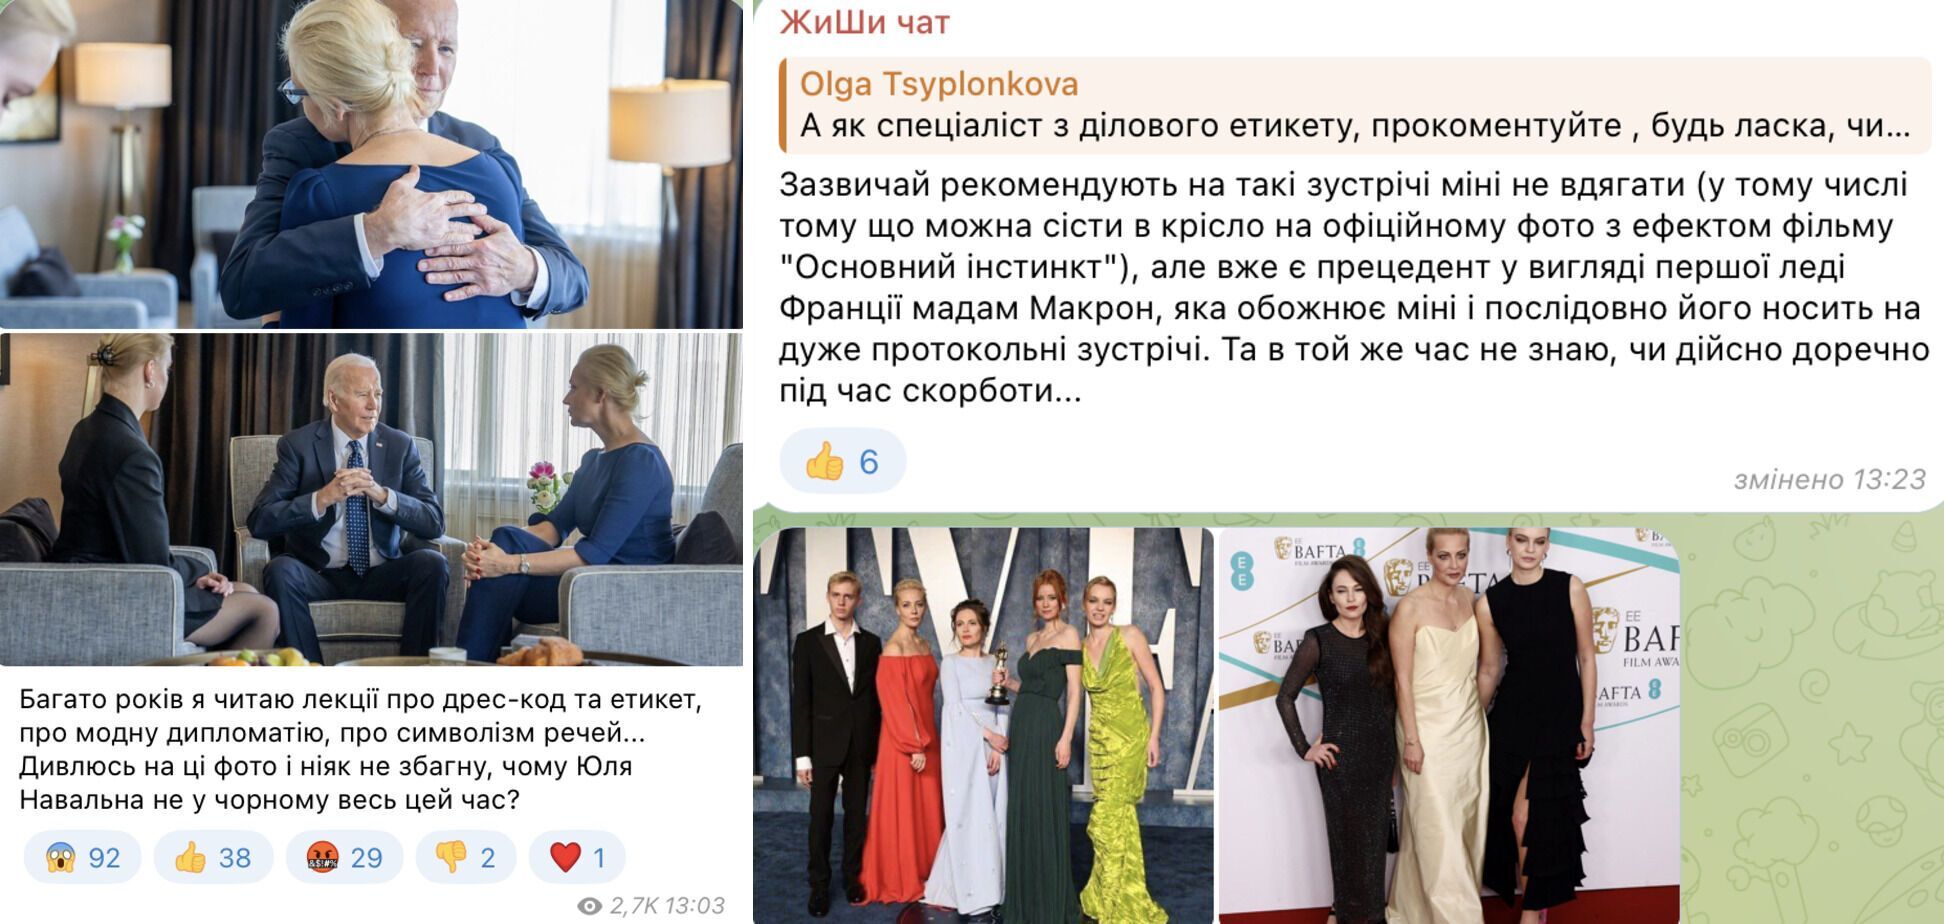 Экс-редактор ELLE & Harper's Bazaar проанализировал образы женщин семьи Навального после его смерти и указал на странные детали